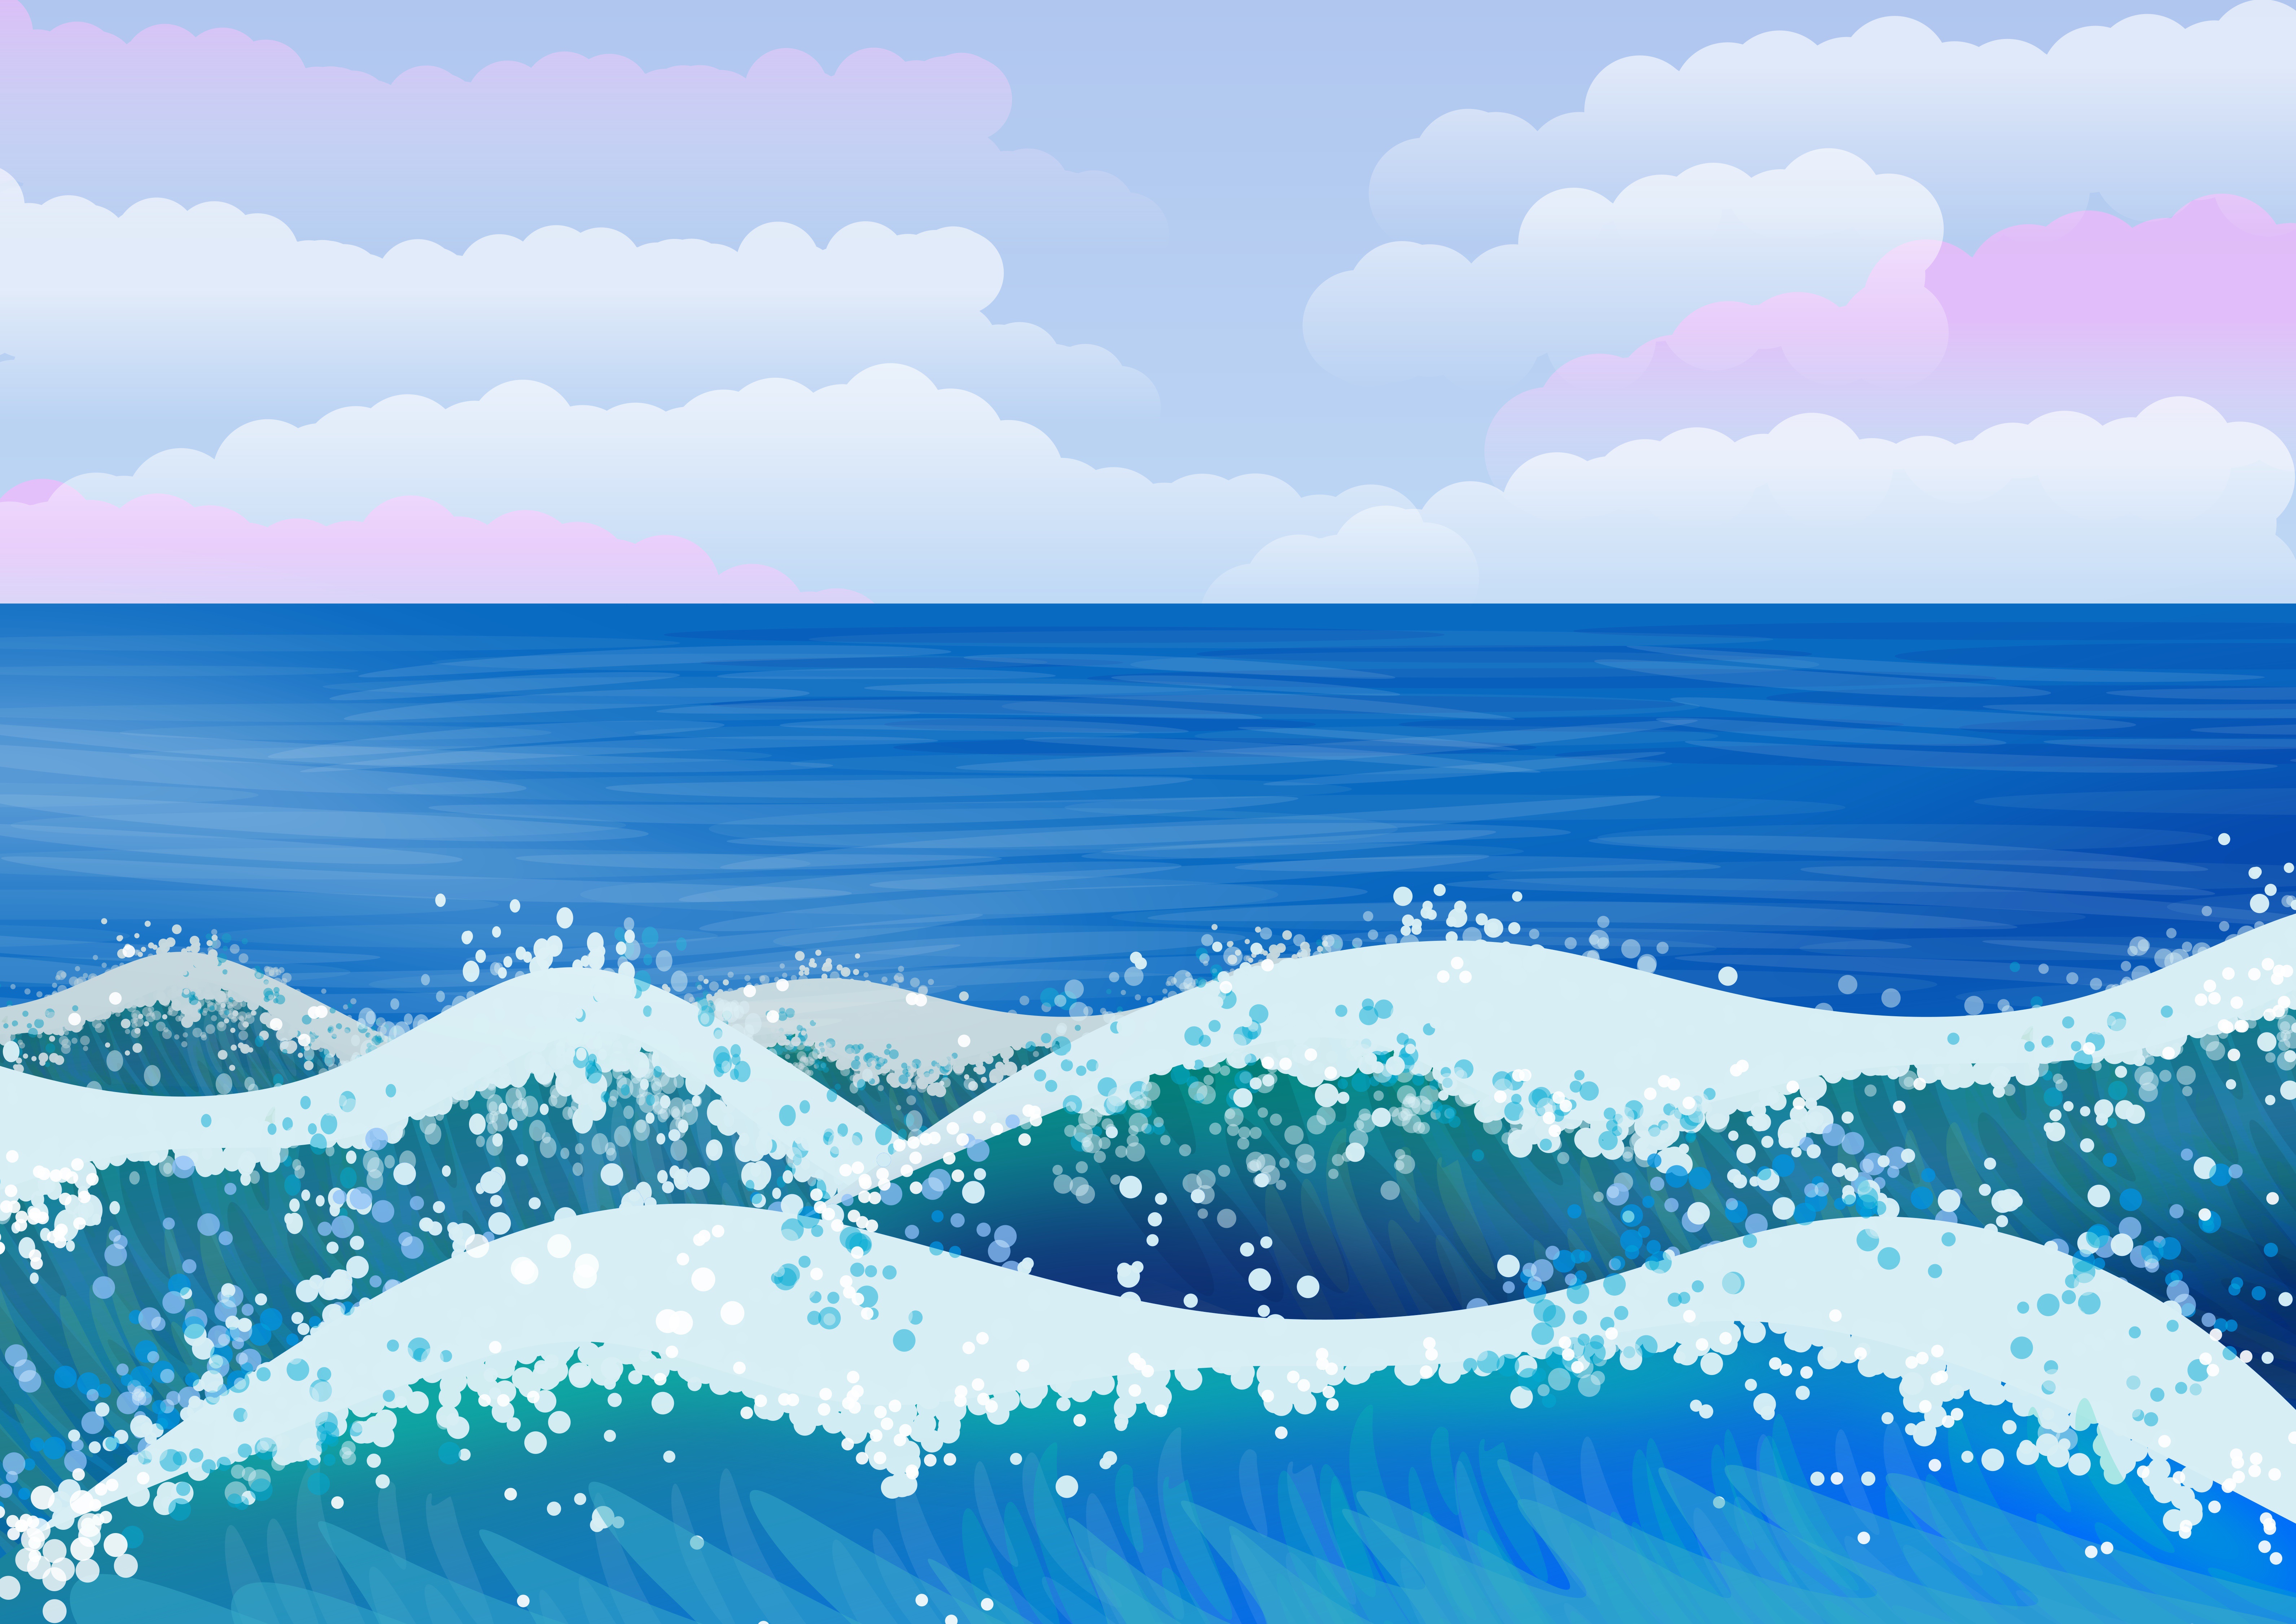 Ocean waves illustration